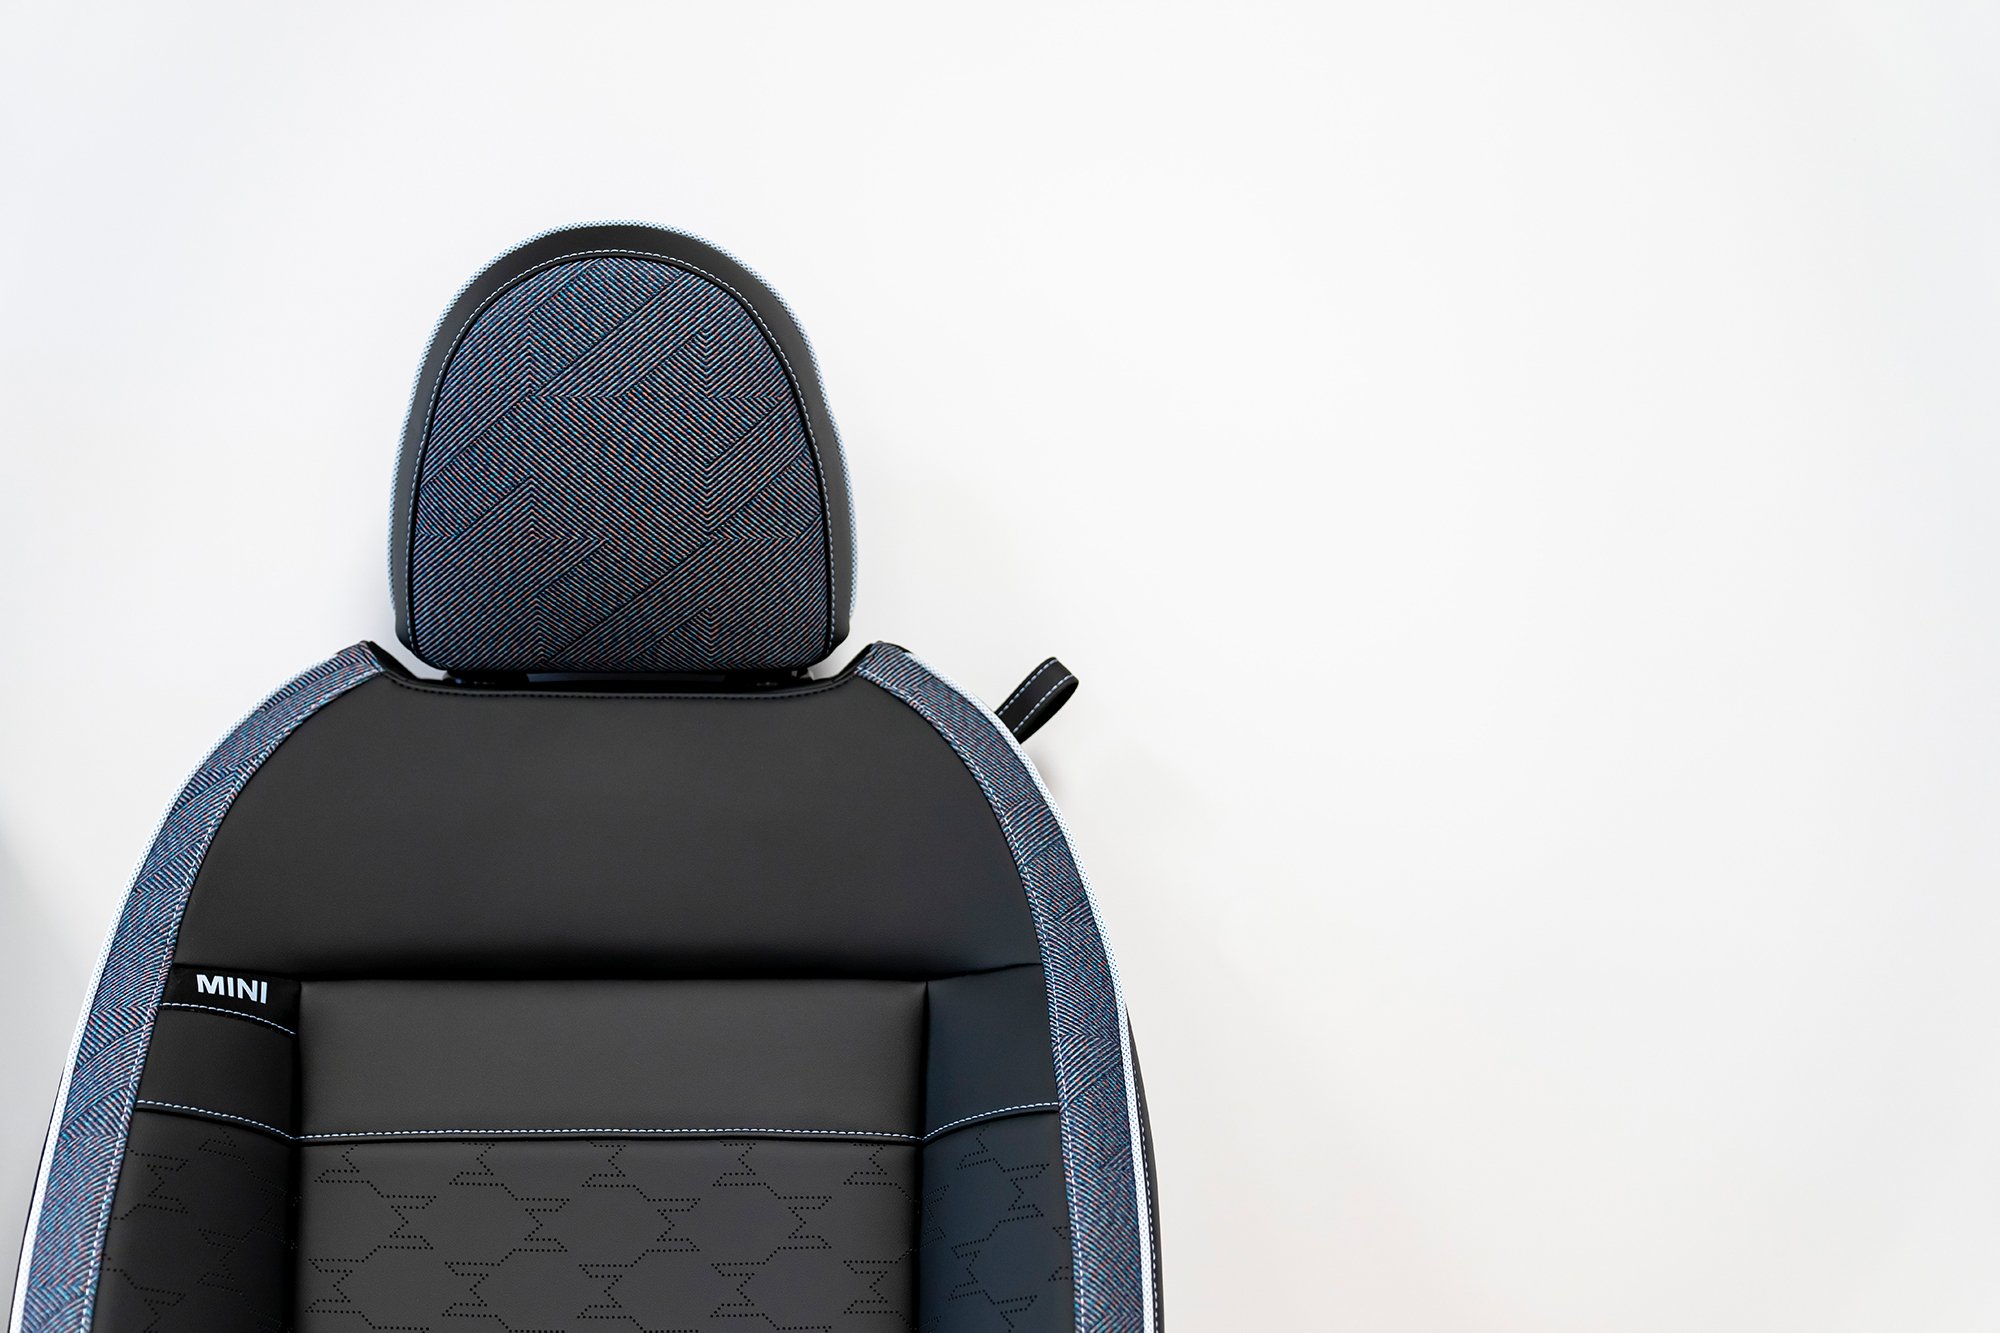 The new seat design of MINI's future model family